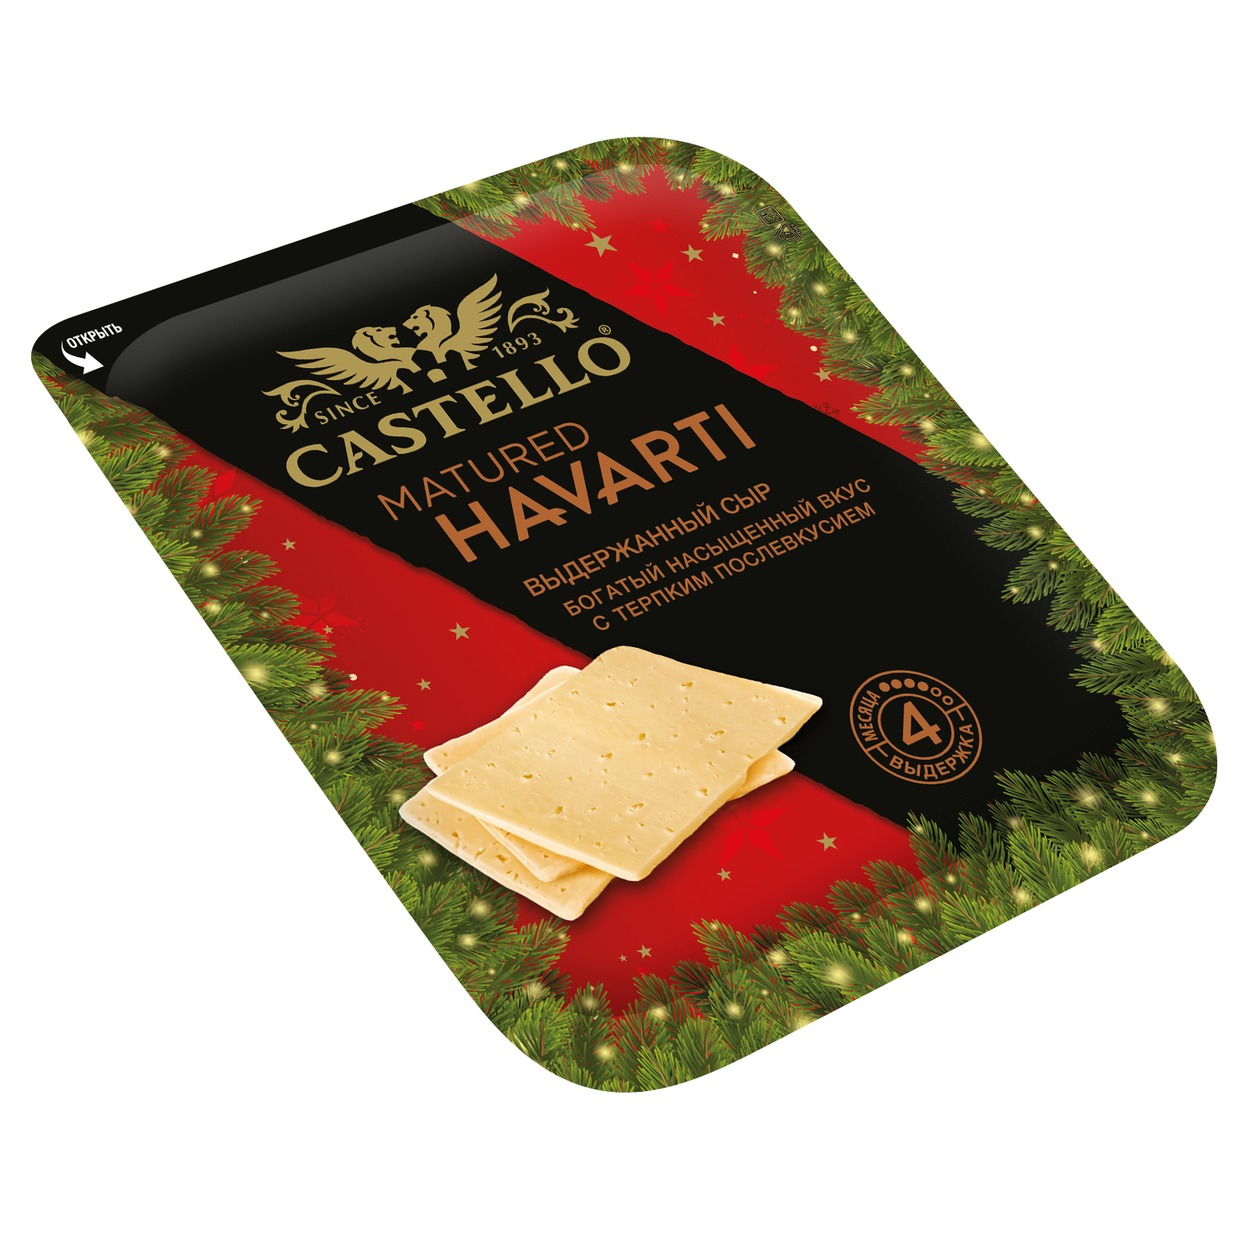 Сыр выдержанный CASTELLO MATURED HAVARTI нарезка 45% 150г по акции в Пятерочке